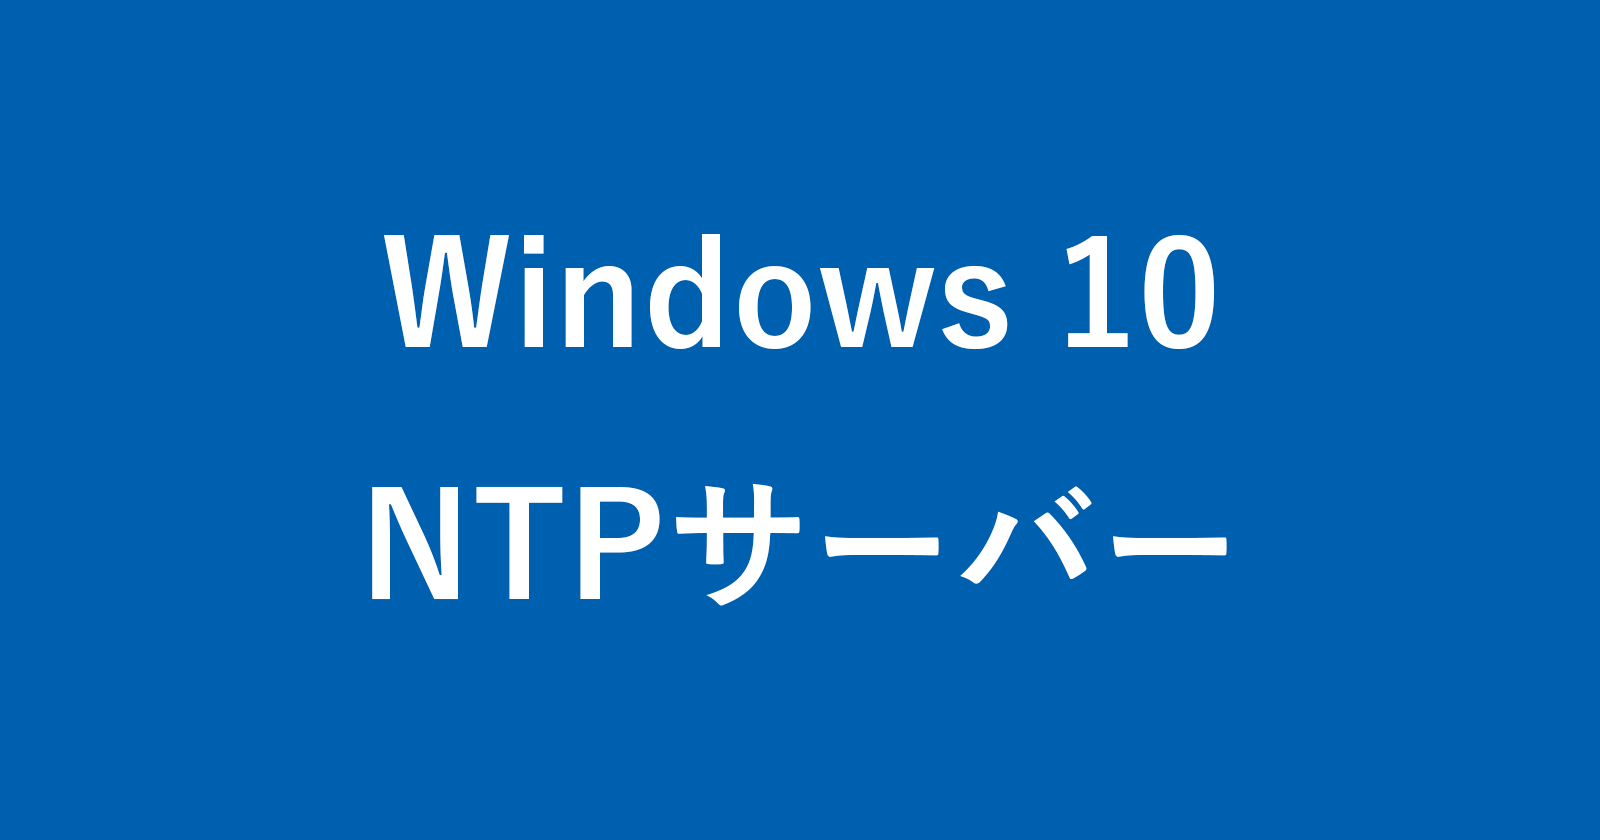 windows 10 ntp